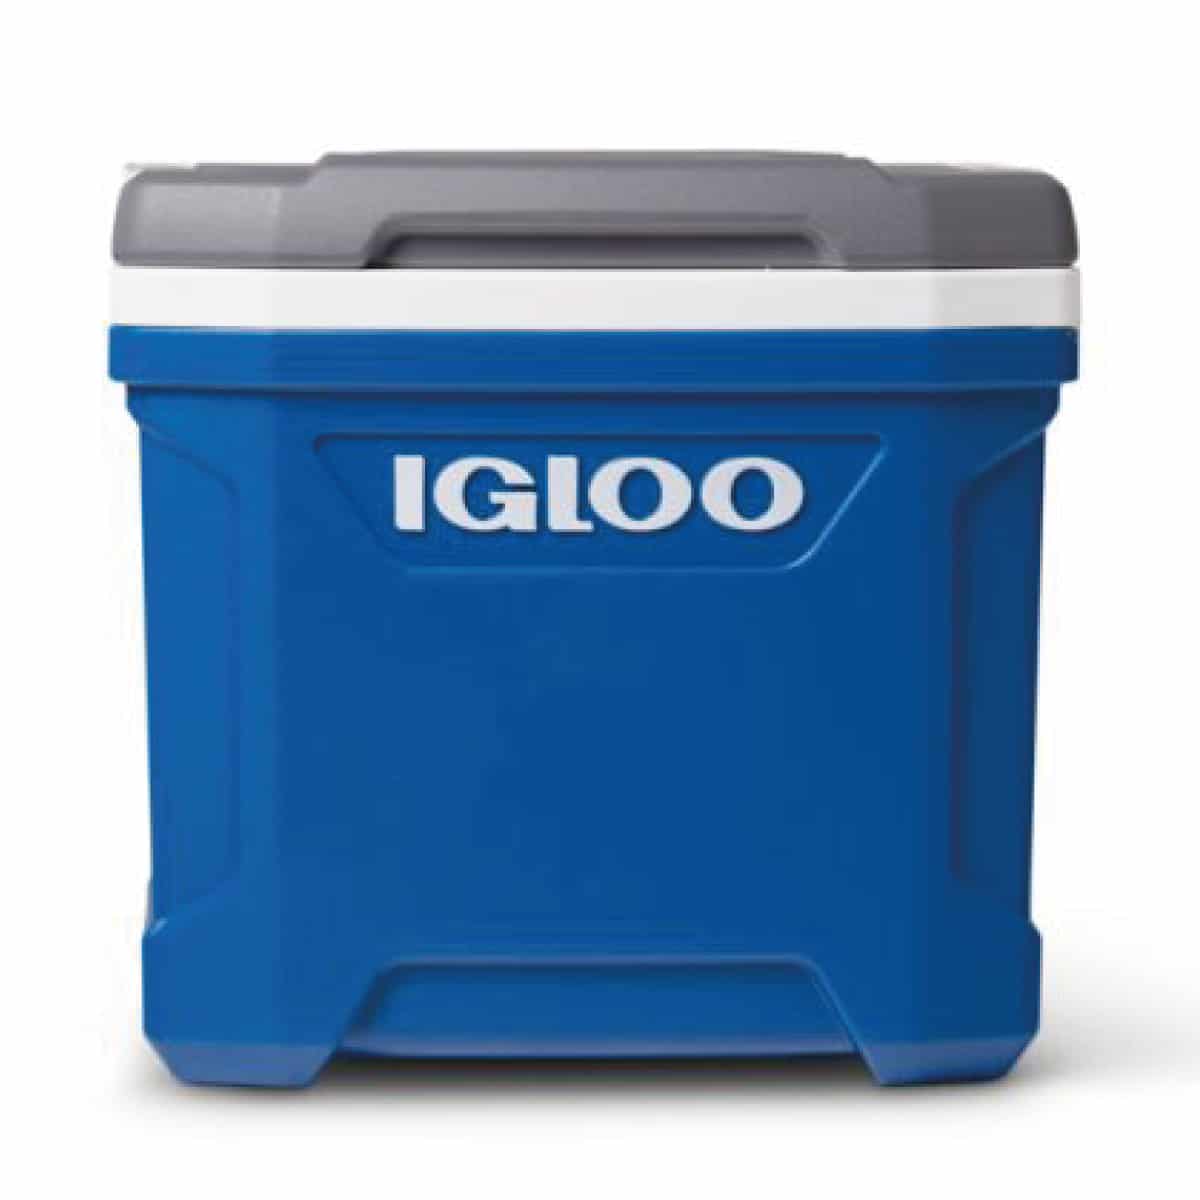 Nevera portátil rígida IGLOO latitude 16 con capacidad de 15 litros color azul